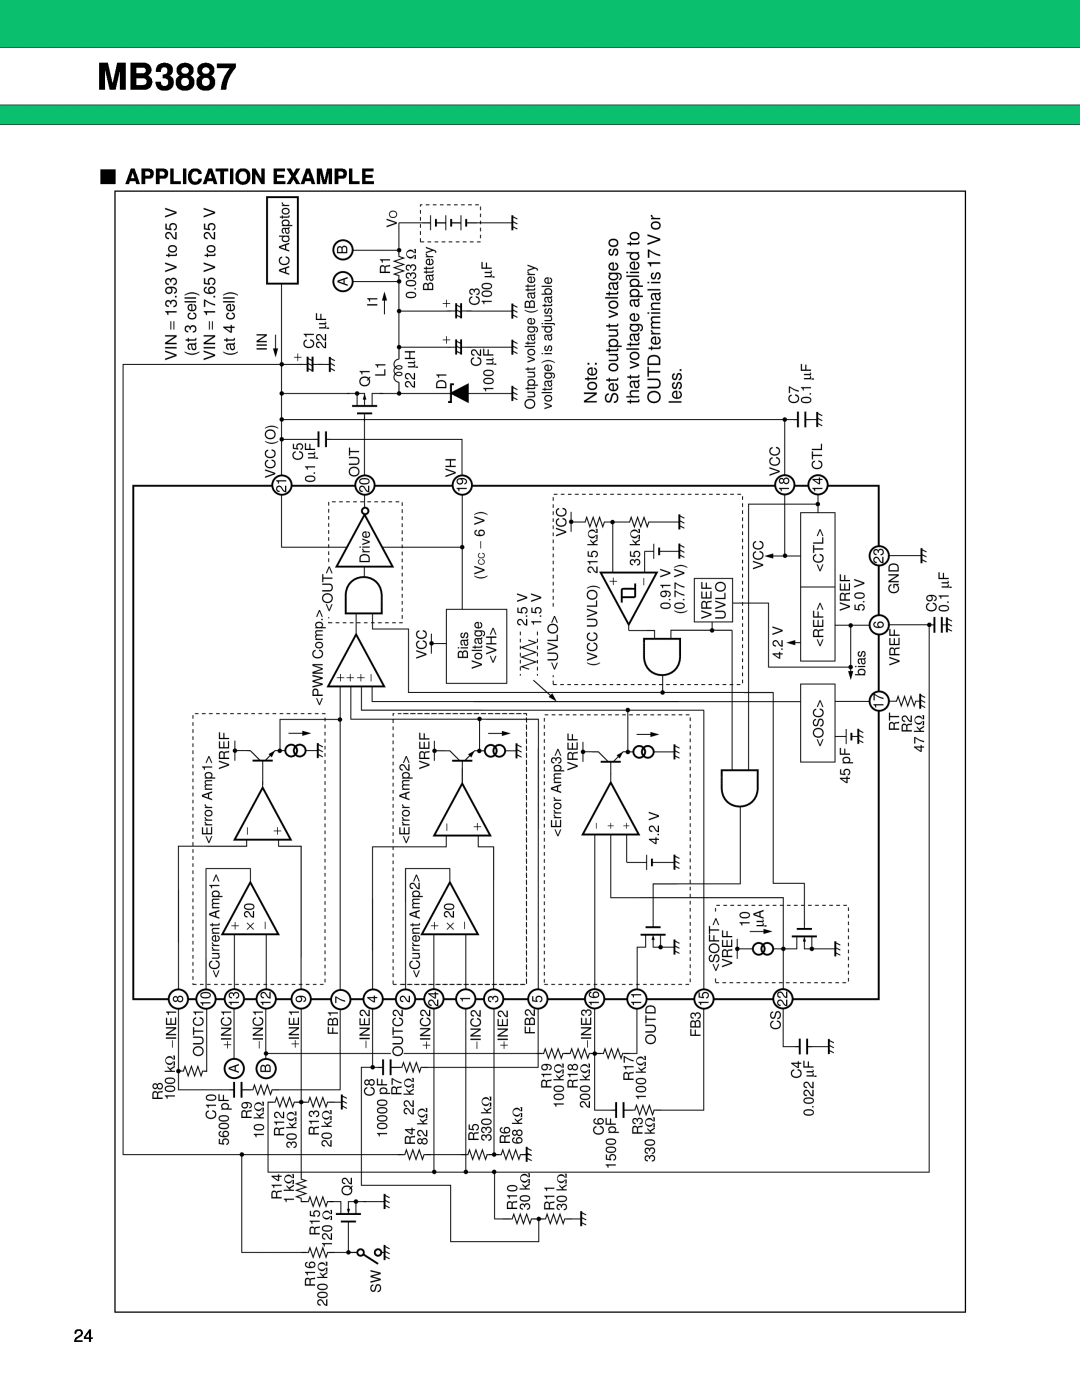 Fujitsu MB3887 manual Application Example, VIN = 13.93 V to 25, at 3 cell, VIN = 17.65 V to 25, at 4 cell 